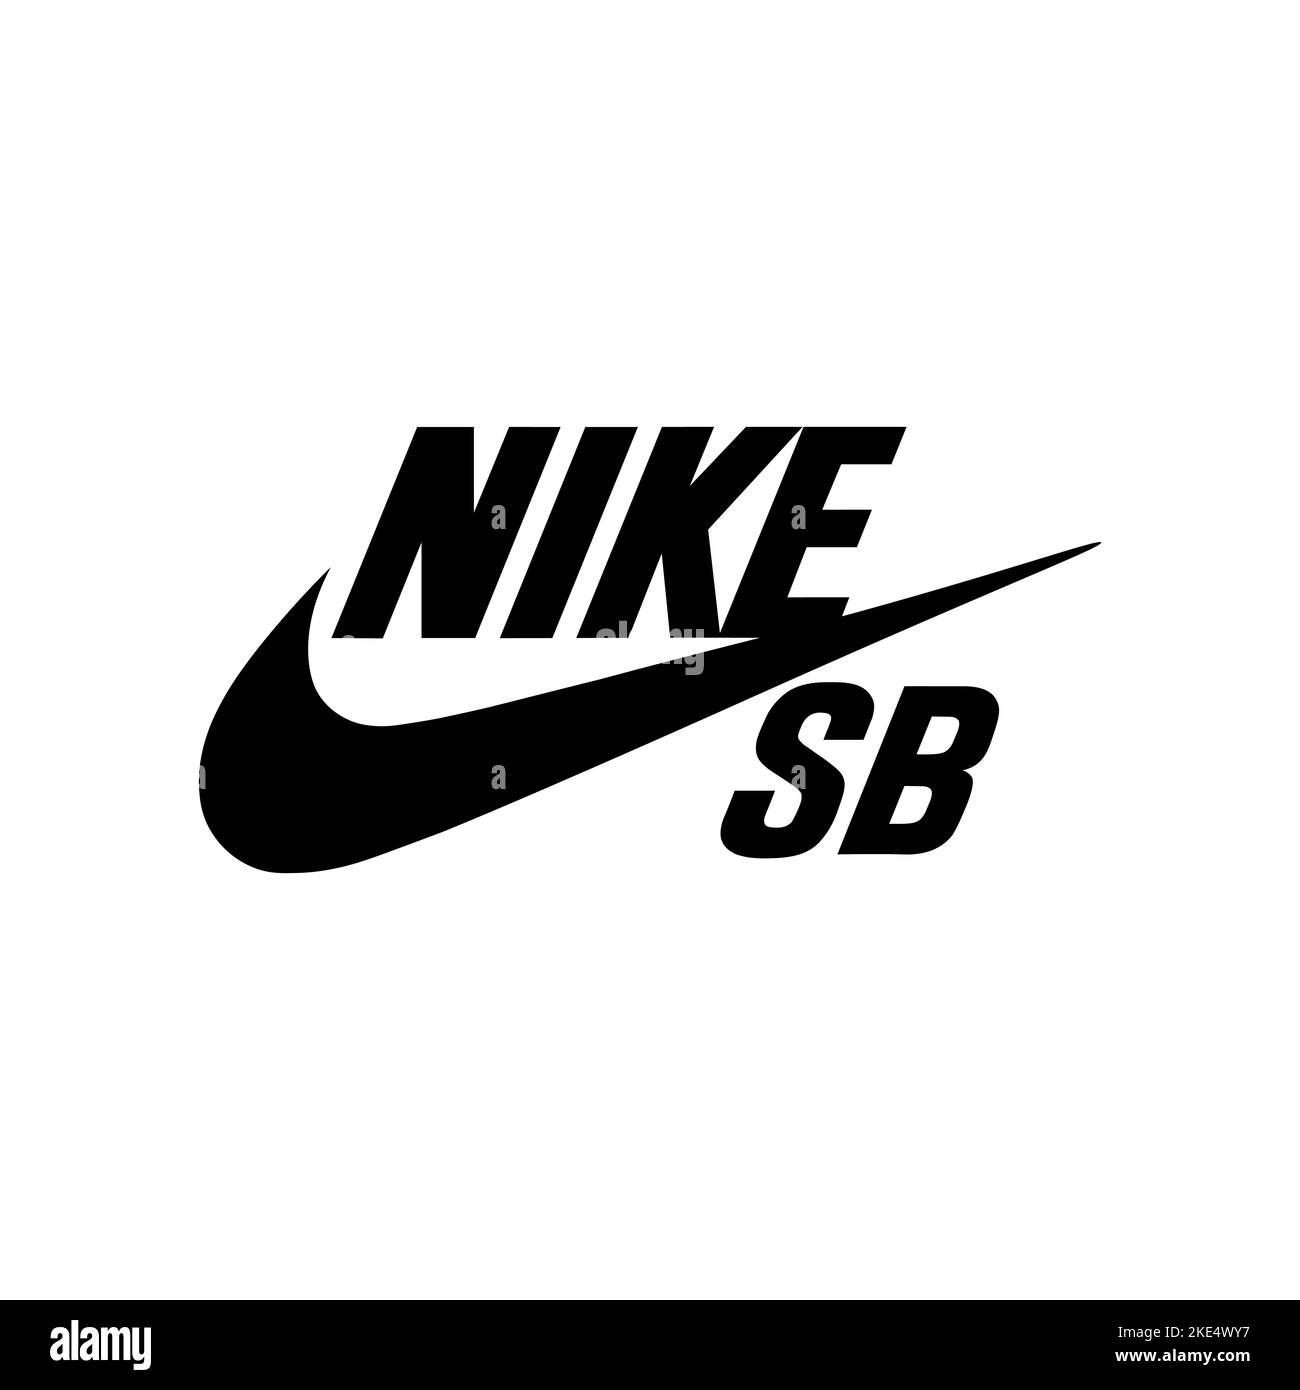 consensus pk creatief Nike sb Banque d'images noir et blanc - Alamy